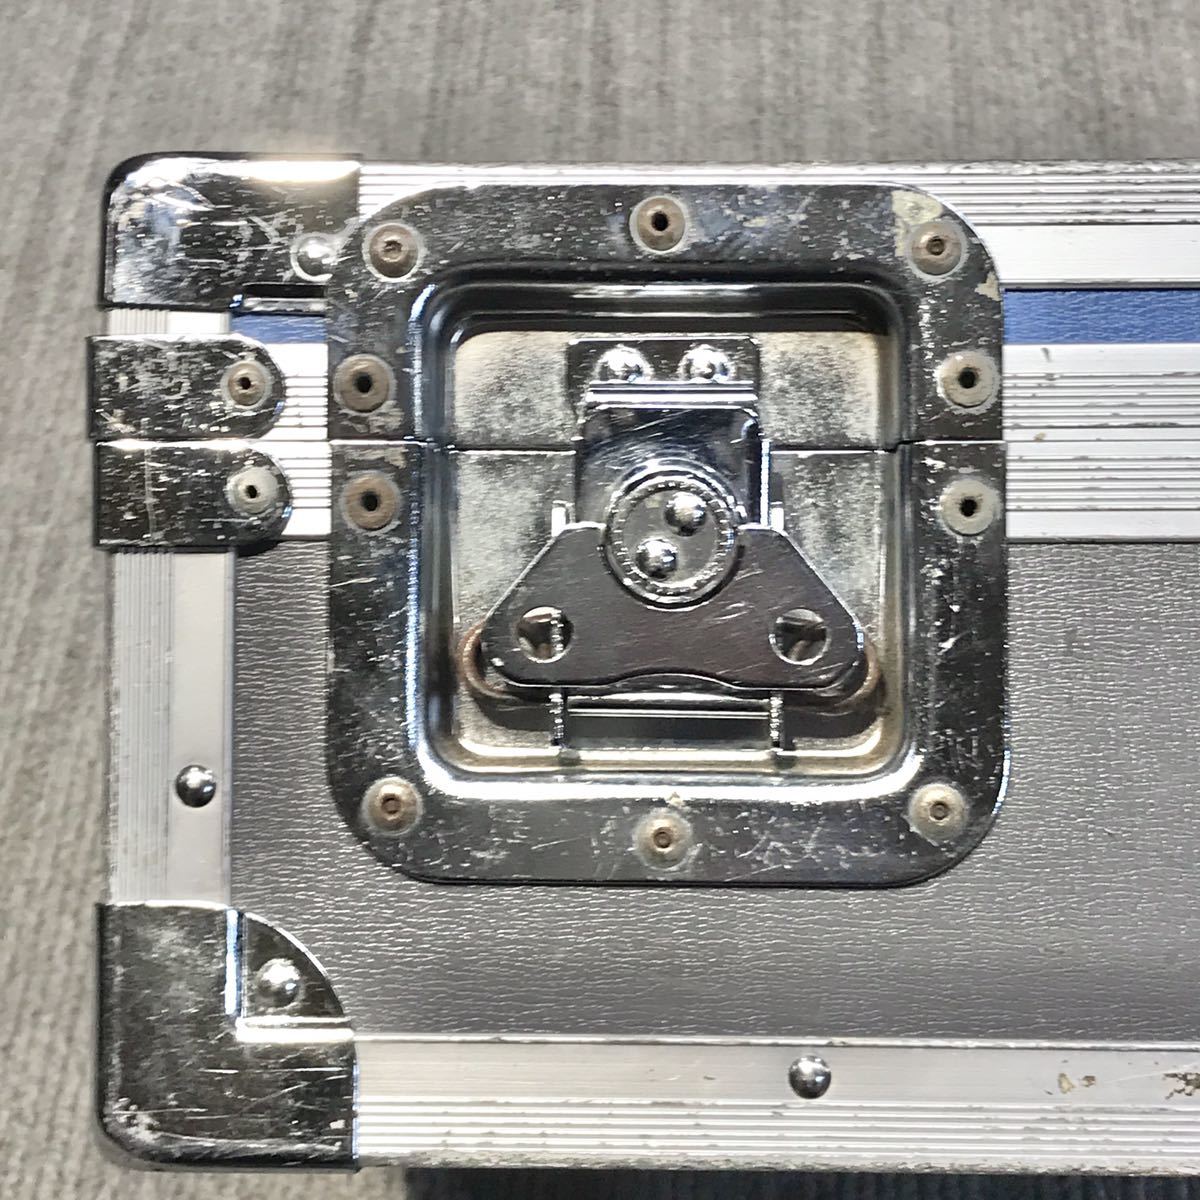 ハードケース ケース ジュラルミン トランク アルミケース 機材 輸送 精密 映像 機器 音声 楽器 カメラ レンズ ツール ボックス 中古 2_画像7